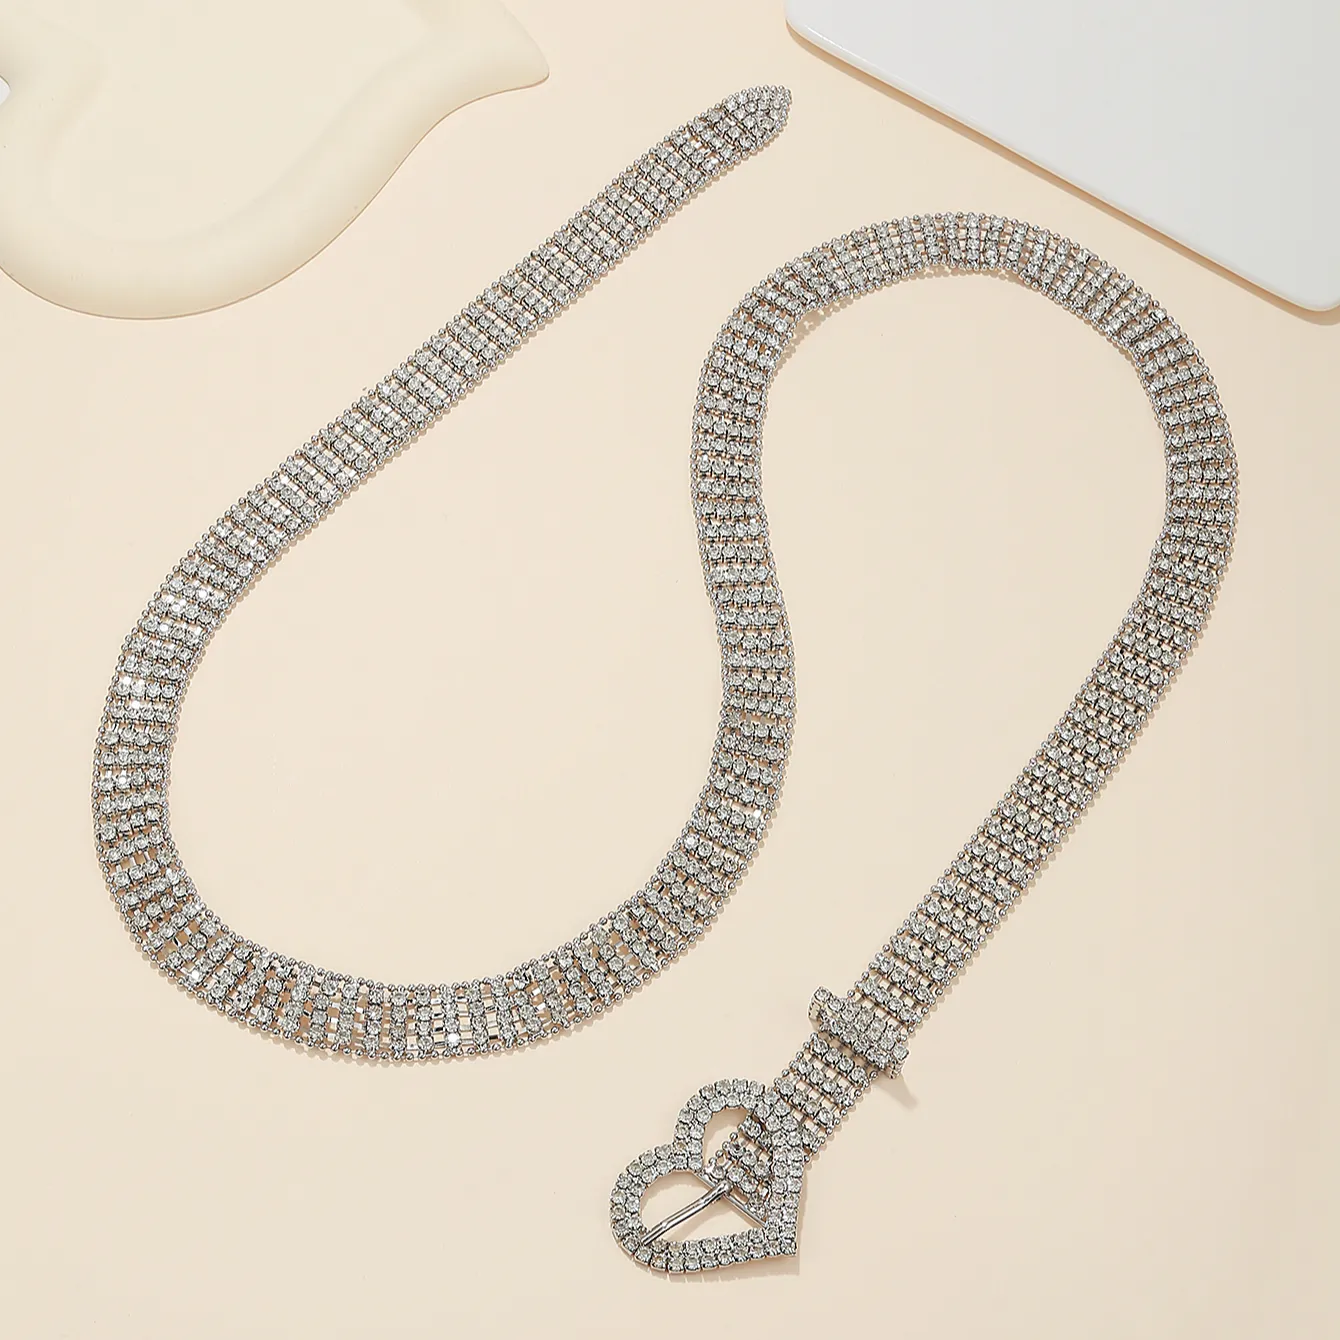 패션 장식 모조 다이아몬드 크리스탈 사랑 반지 금속 벨트 금속 체인 벨트